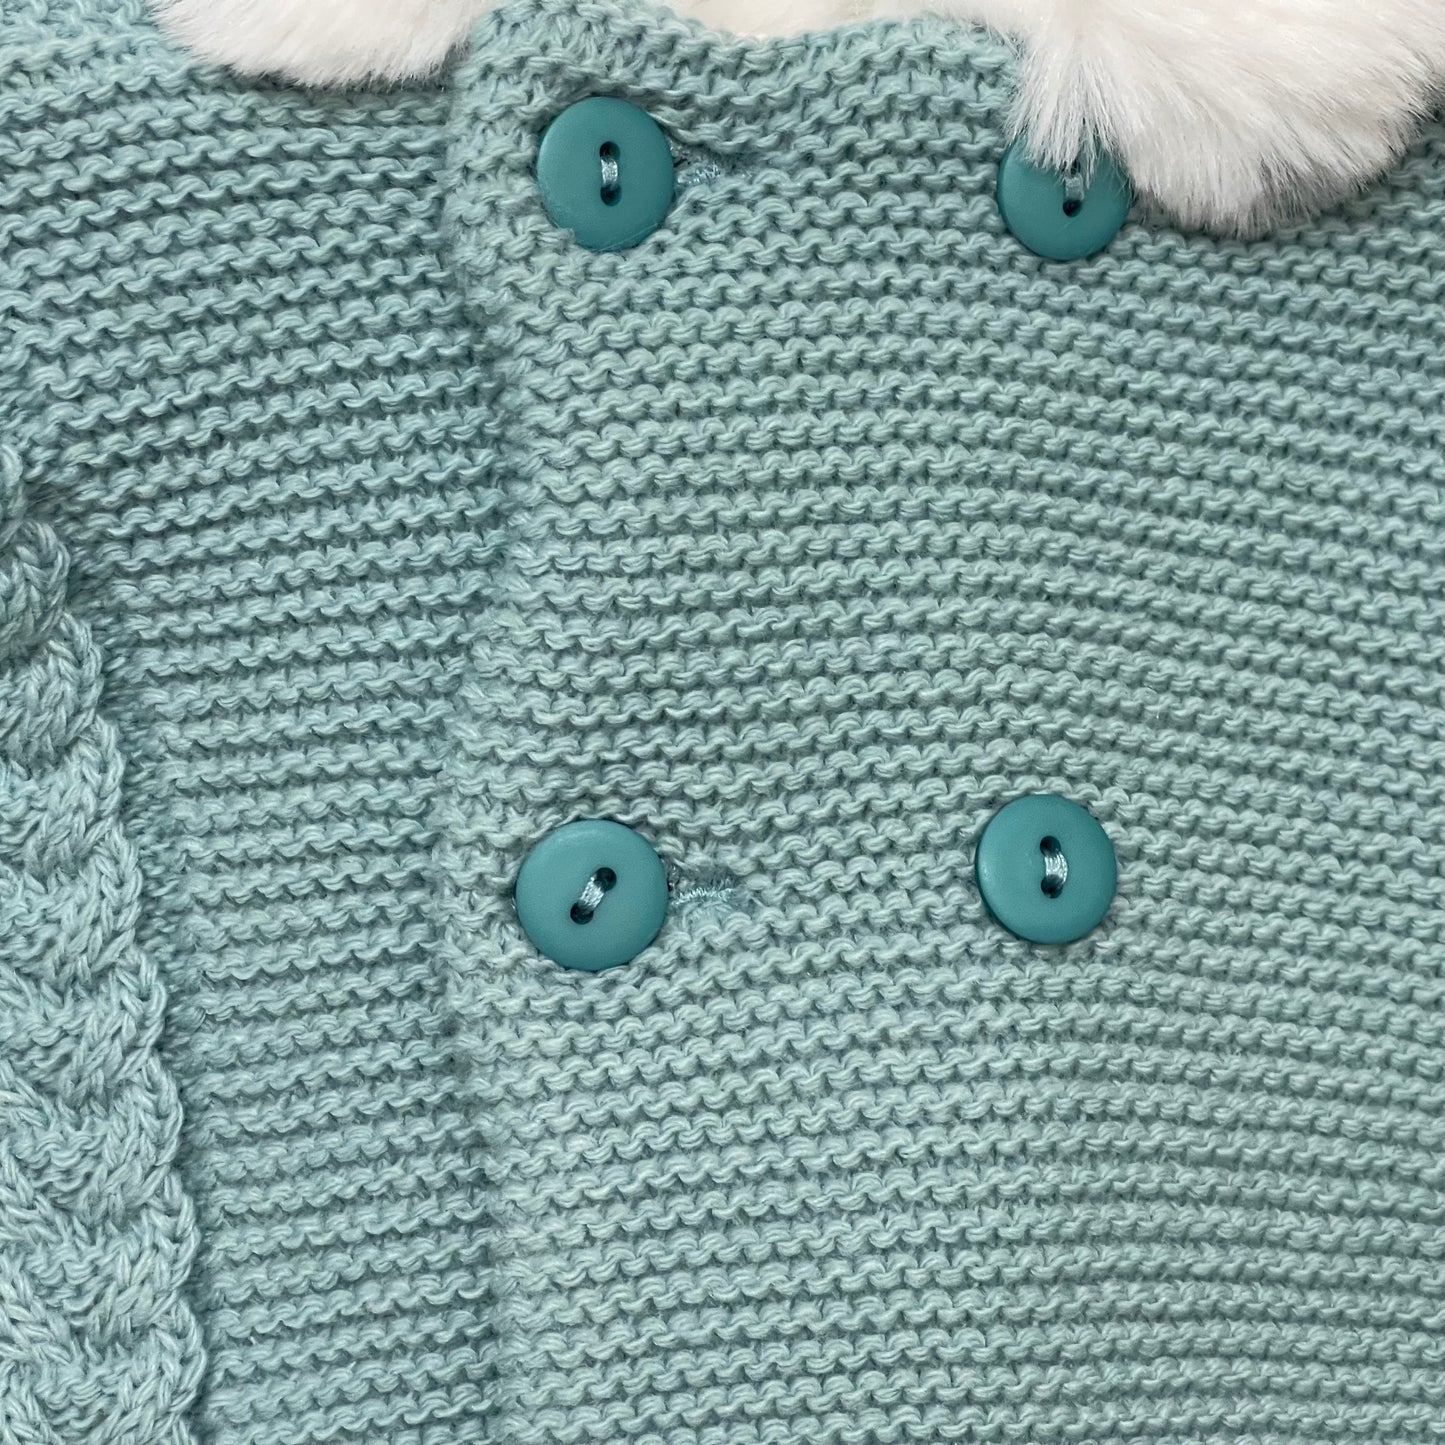 Comprar abrigo de lana con capucha para bebés. Color verde. Detalle de botones.Temporada otoño-invierno. 